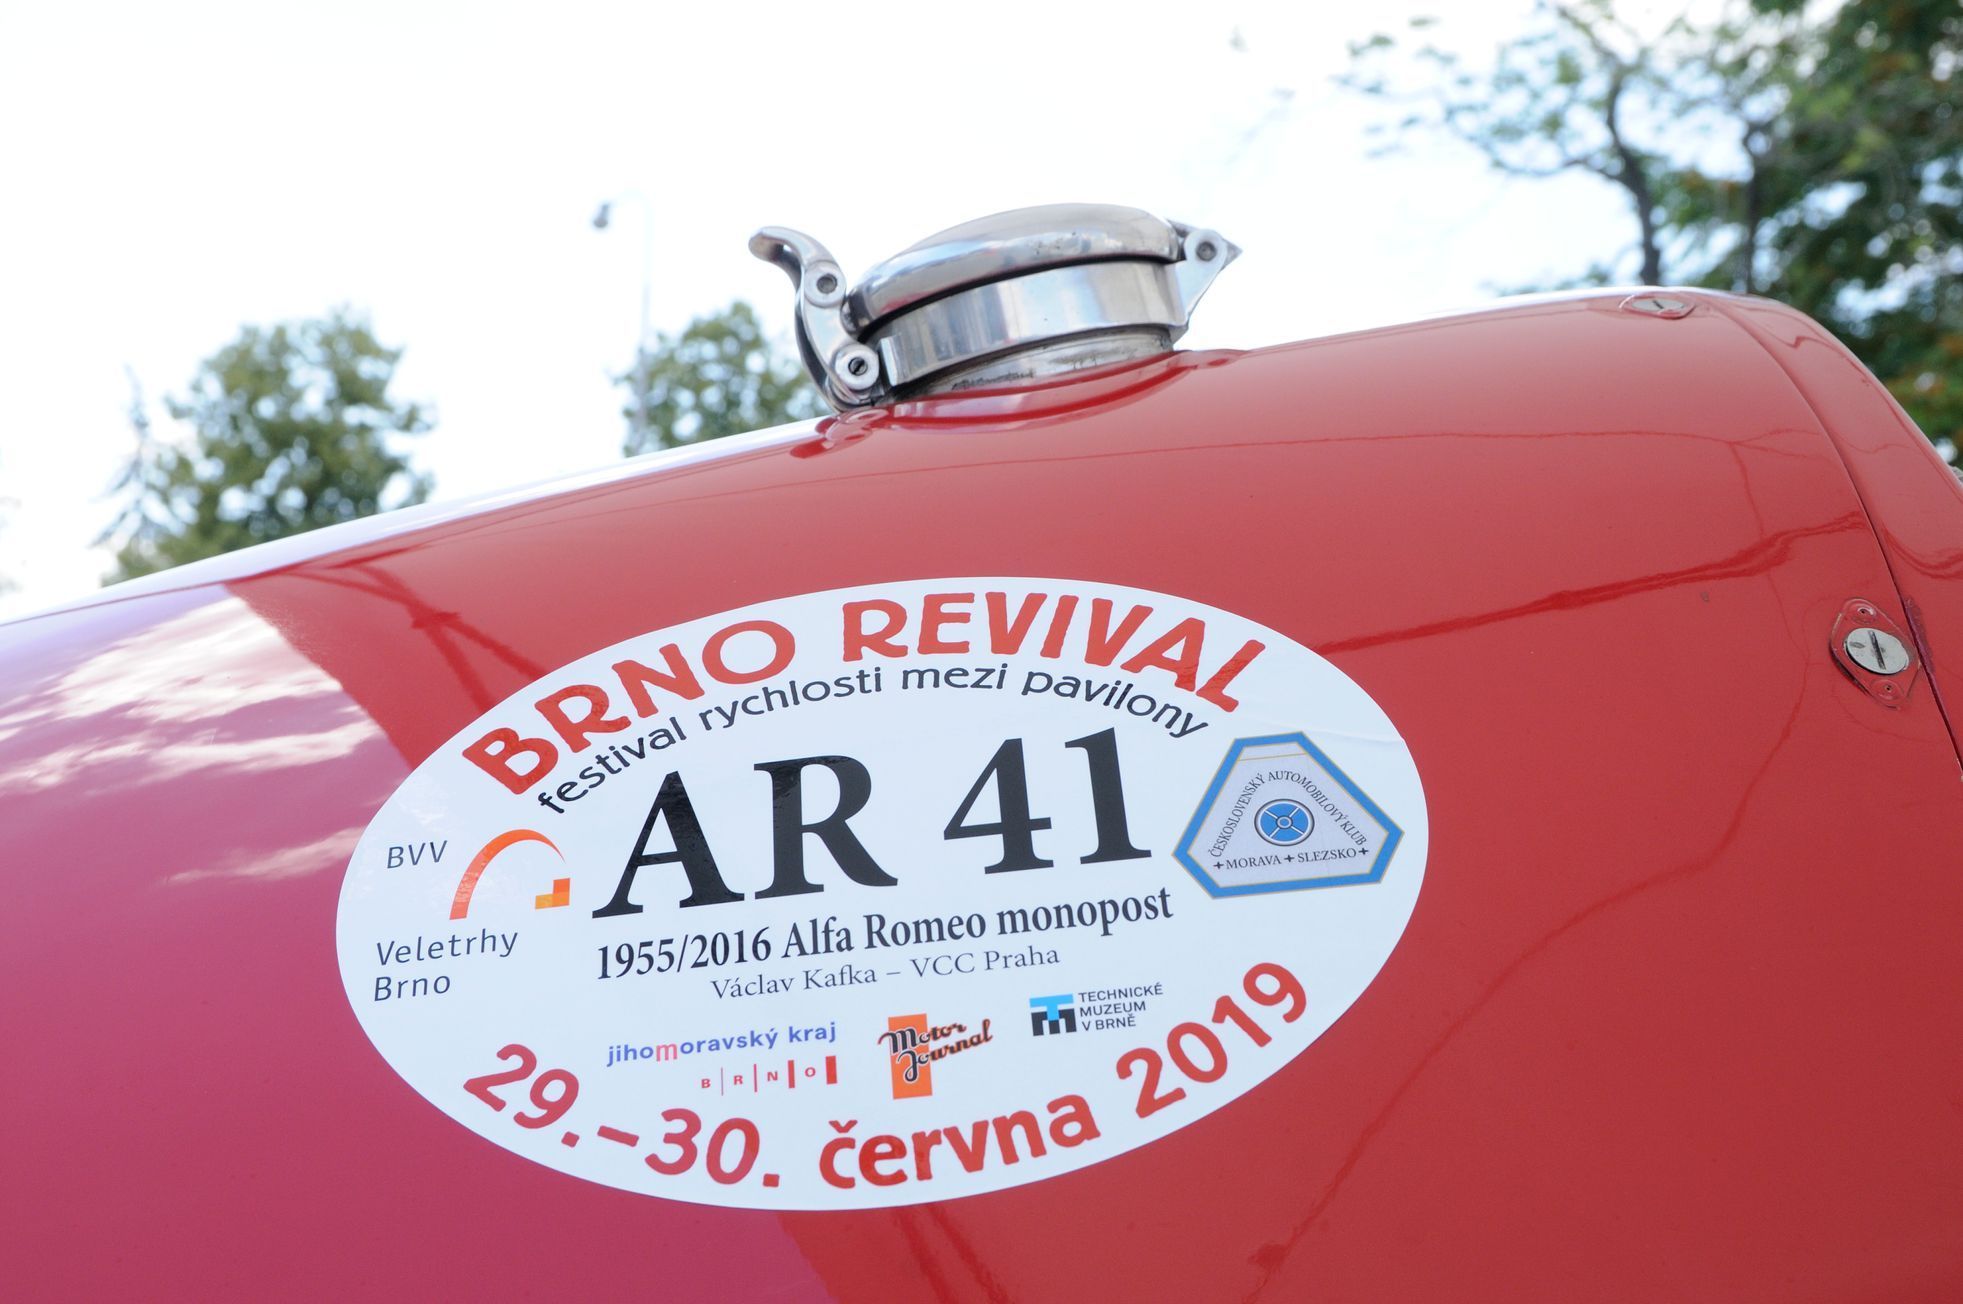 Brno Revival 2019